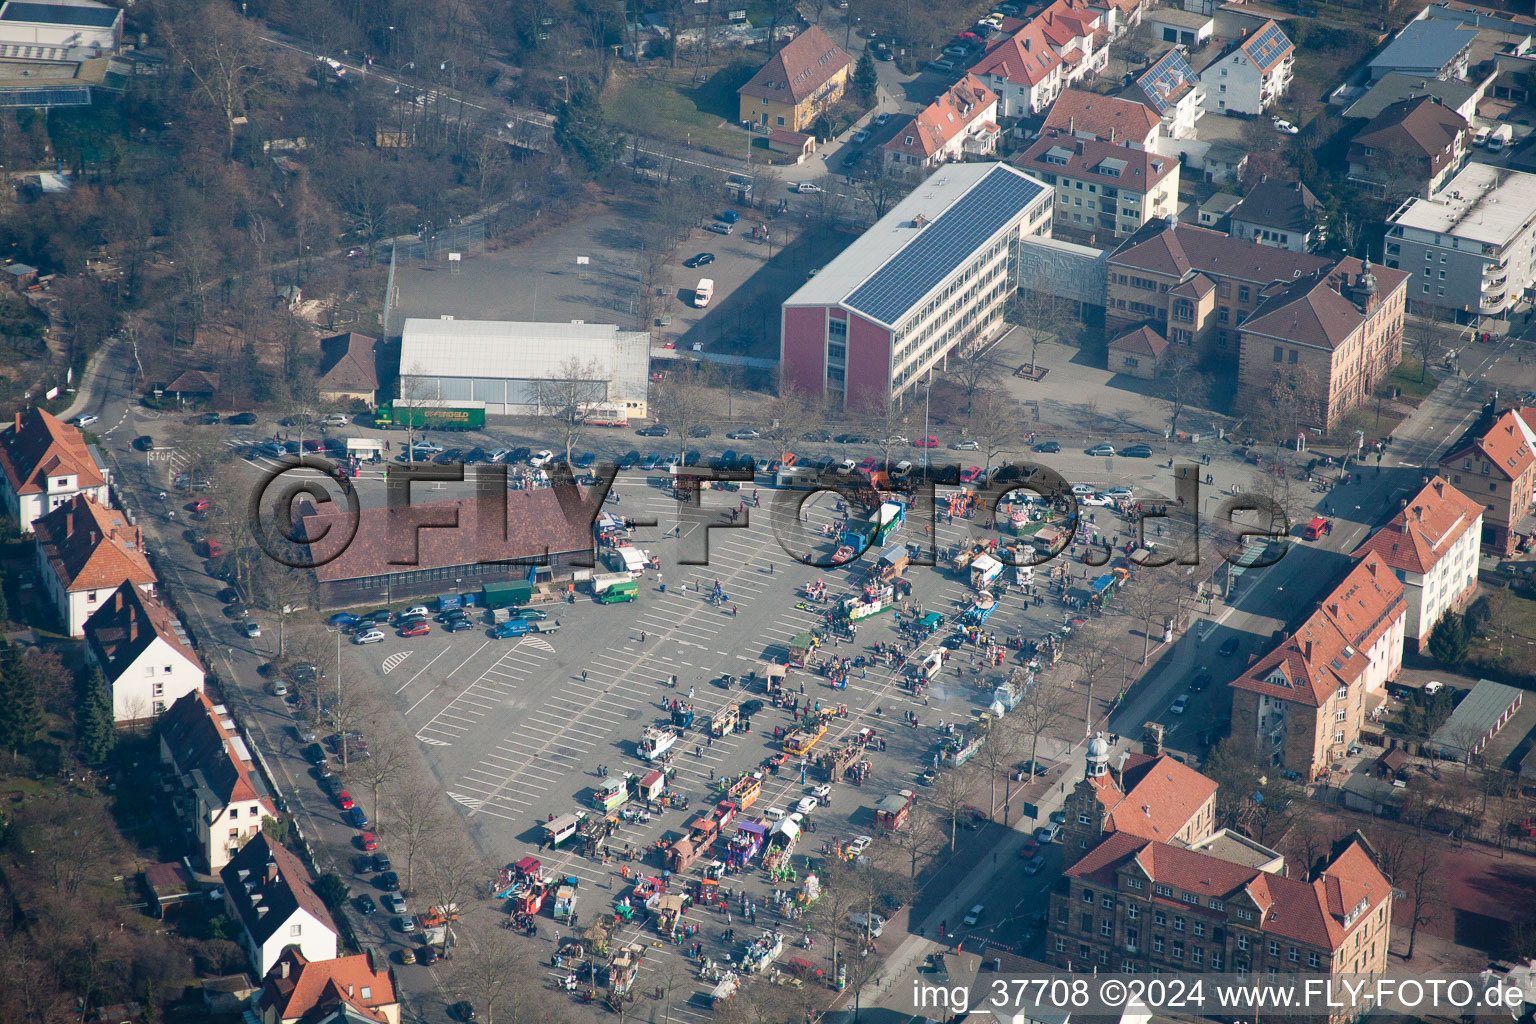 Luftbild von Marktplatz, Aufbau des Faschingsumzugs in Landau in der Pfalz im Bundesland Rheinland-Pfalz, Deutschland